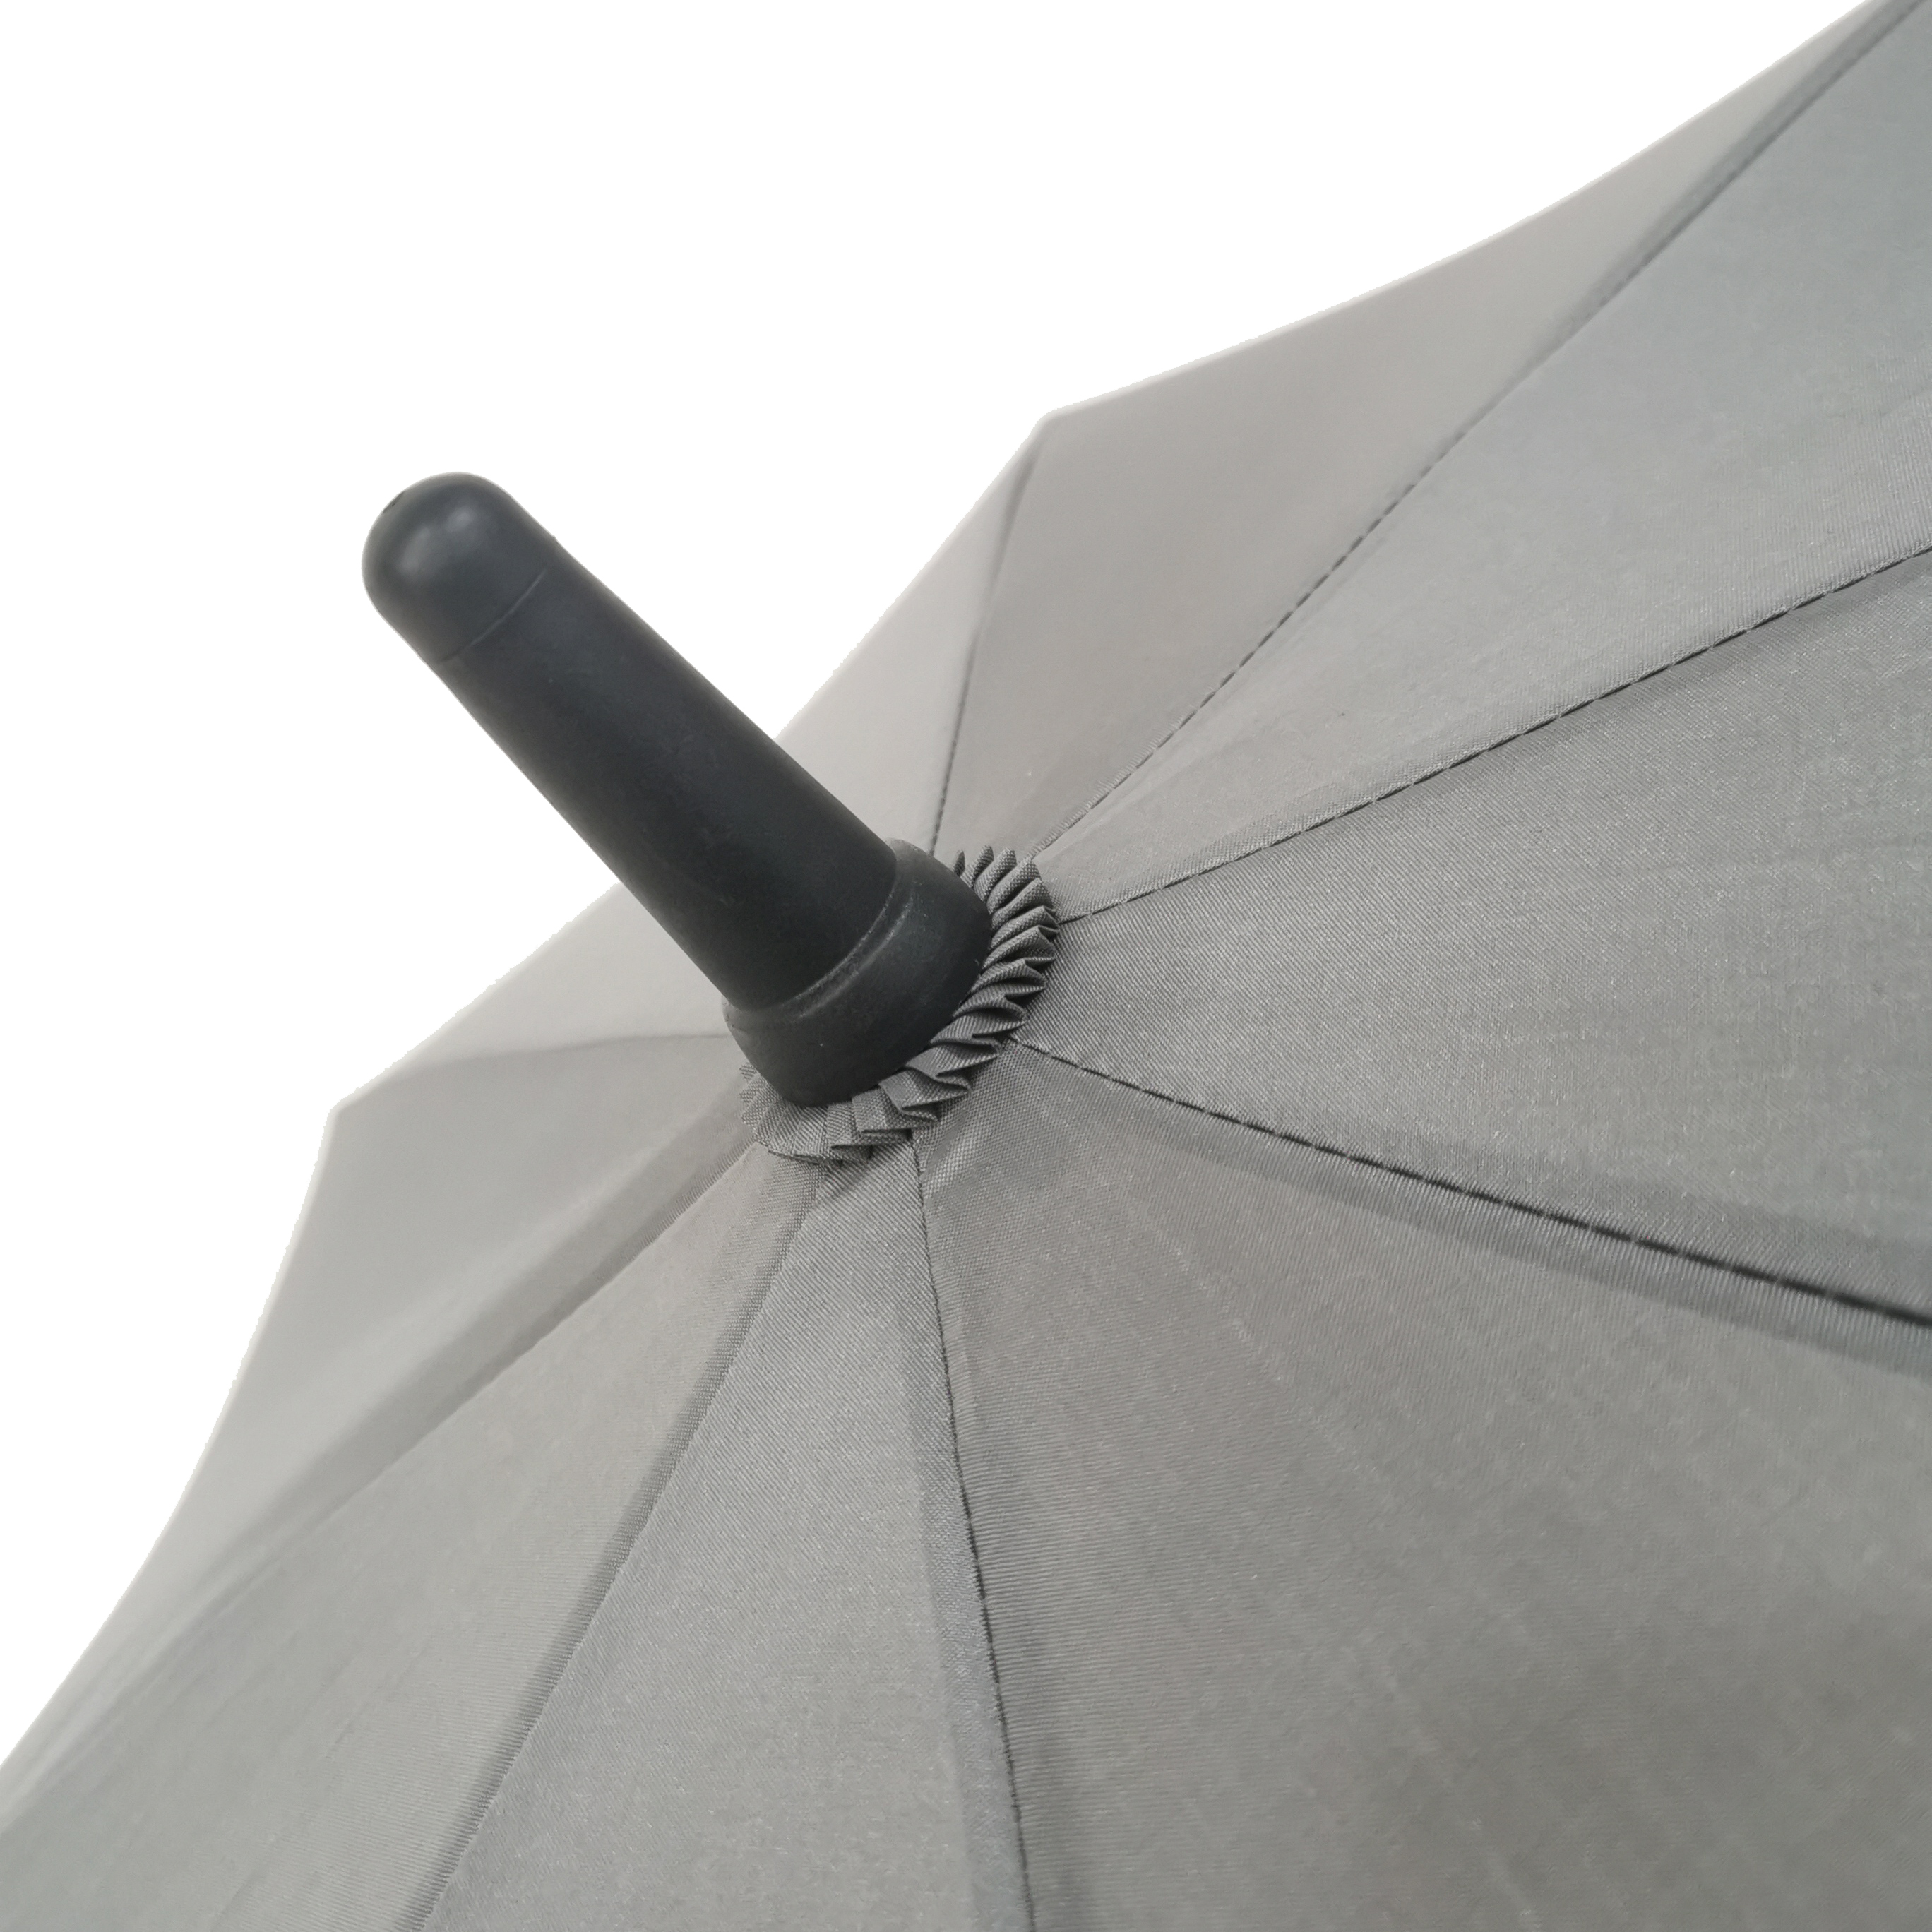 https://www.hodaumbrella.com/premium-quality-arc-54-इंच-golf-umbrella-product/